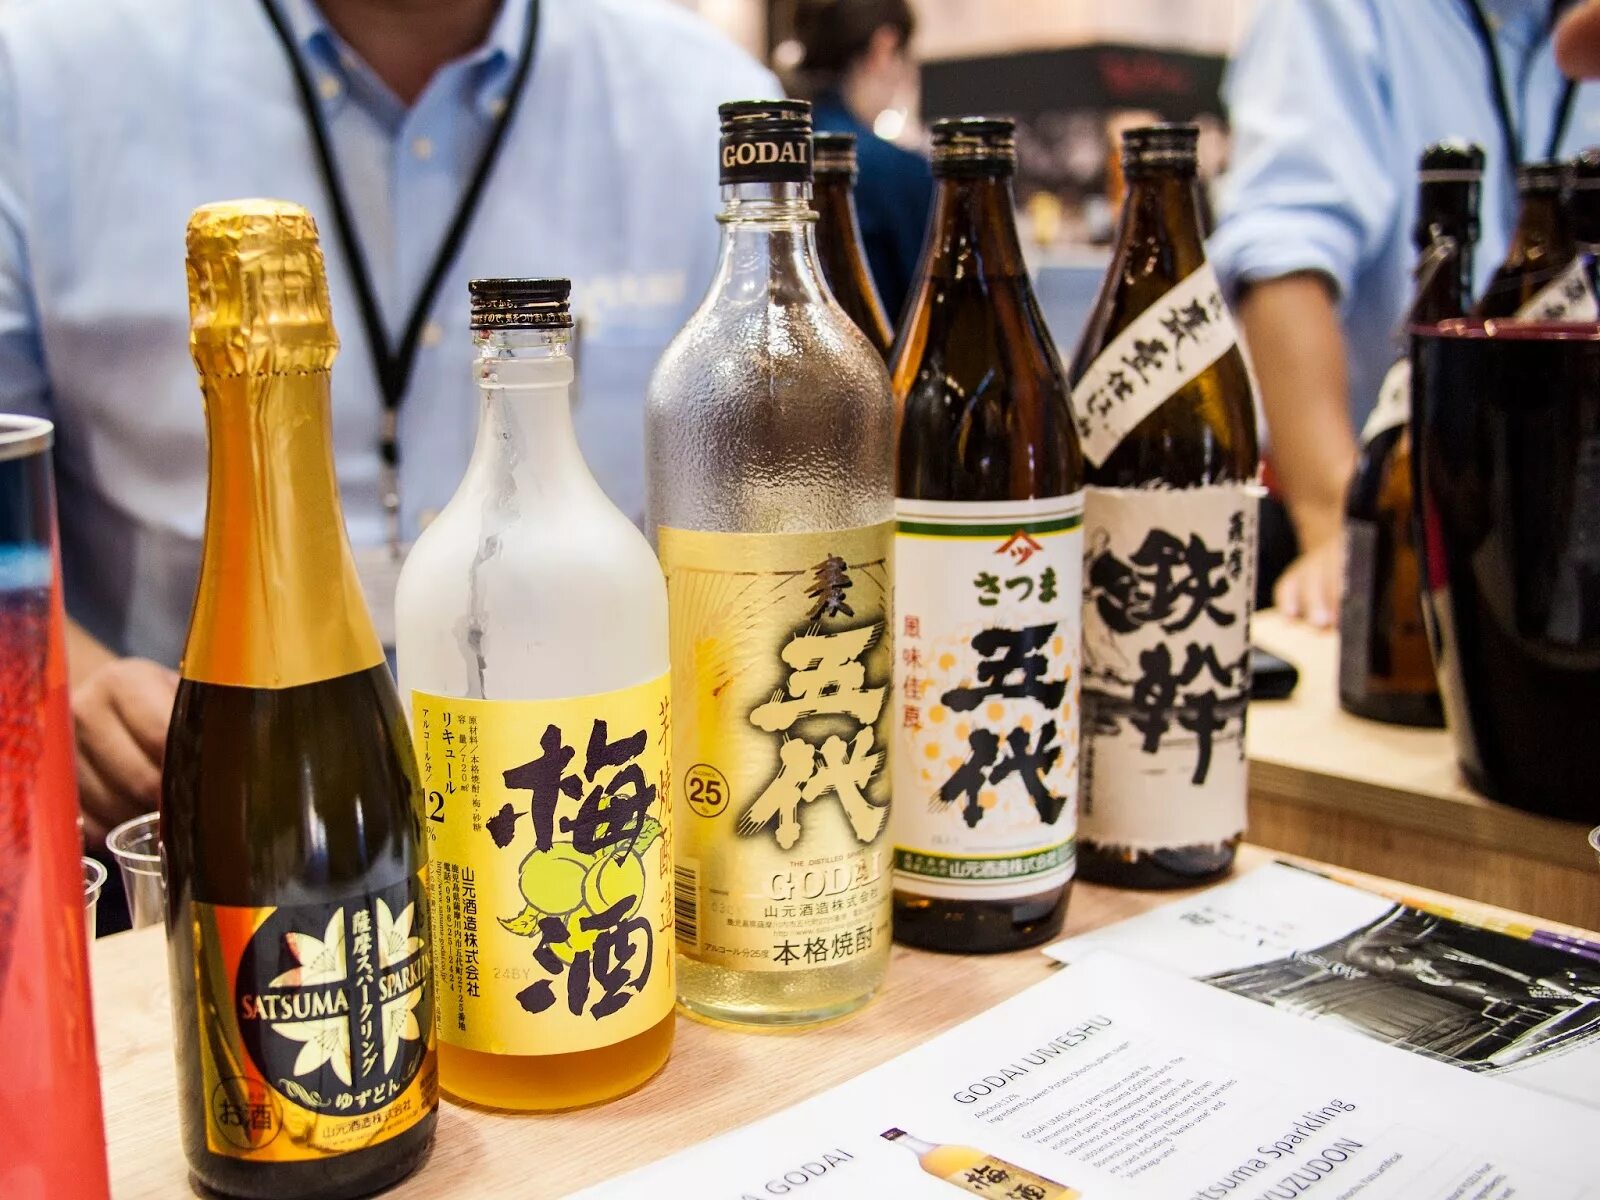 Саке это. Саке японская водка. Саке Yuzu. Саке в Японии в больших бутылках. День саке в Японии 1 октября.